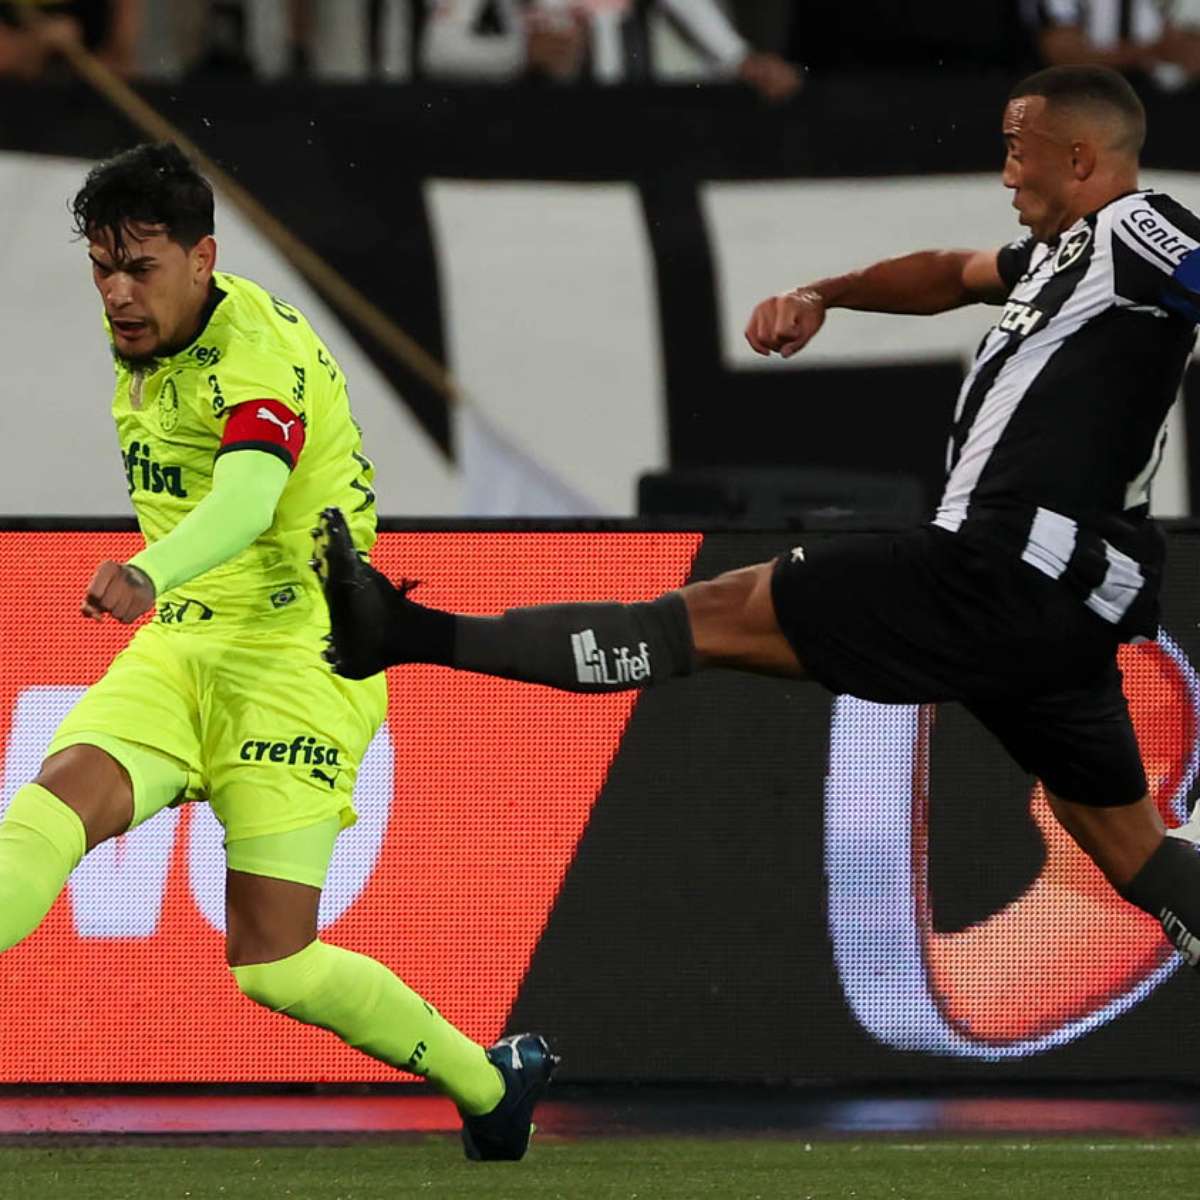 Com empate do Palmeiras, Botafogo nem precisa entrar em campo para